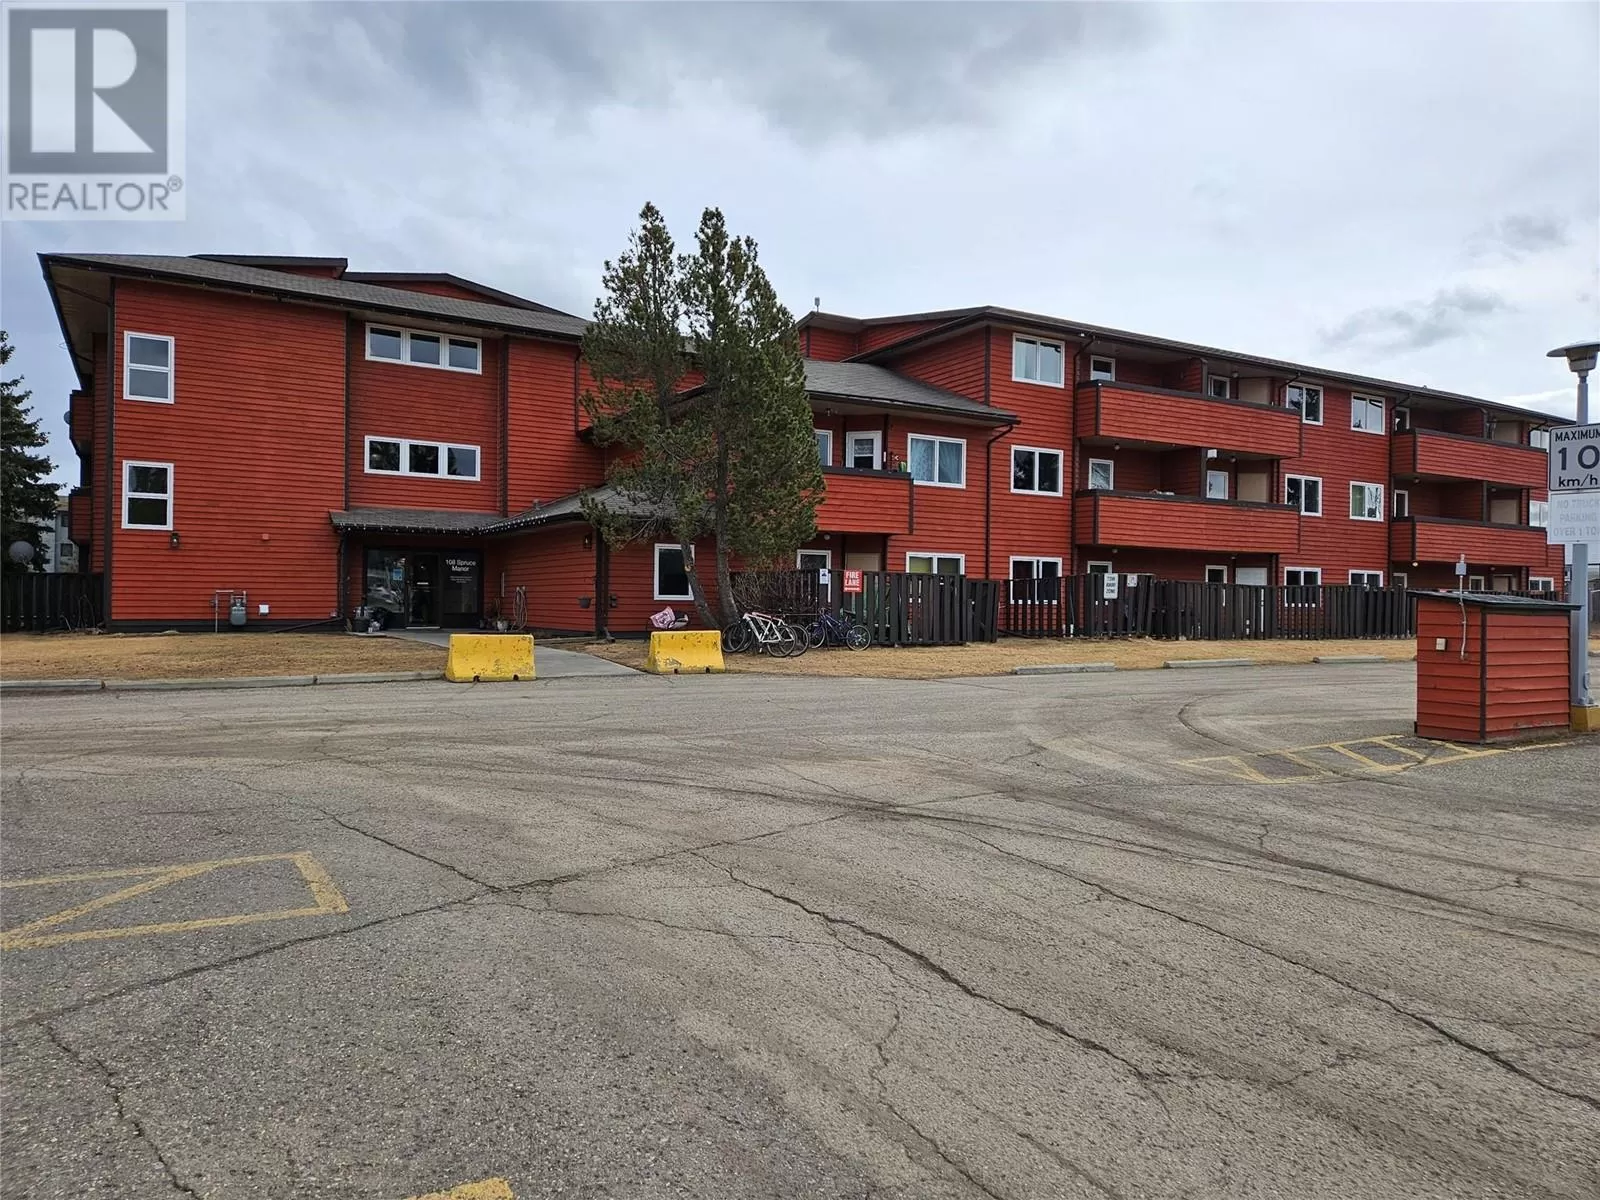 Apartment for rent: 108 Spruce Avenue Unit# 301, Tumbler Ridge, British Columbia V0C 2W0